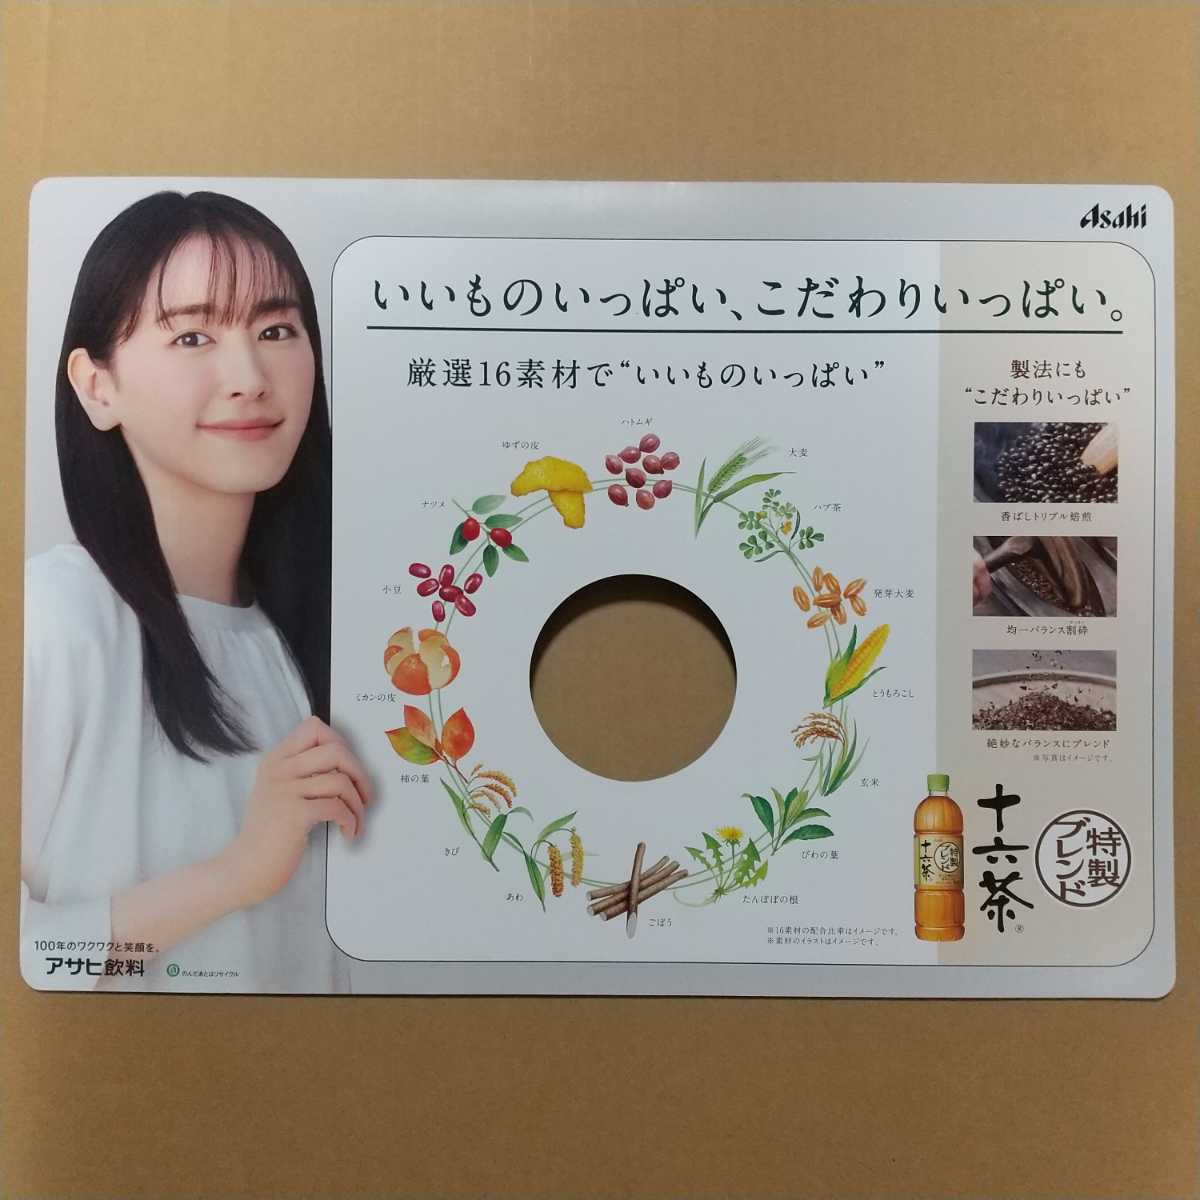  не продается Aragaki Yui большой панель pop Special производства Blend 10 шесть чай POP Asahi напиток 